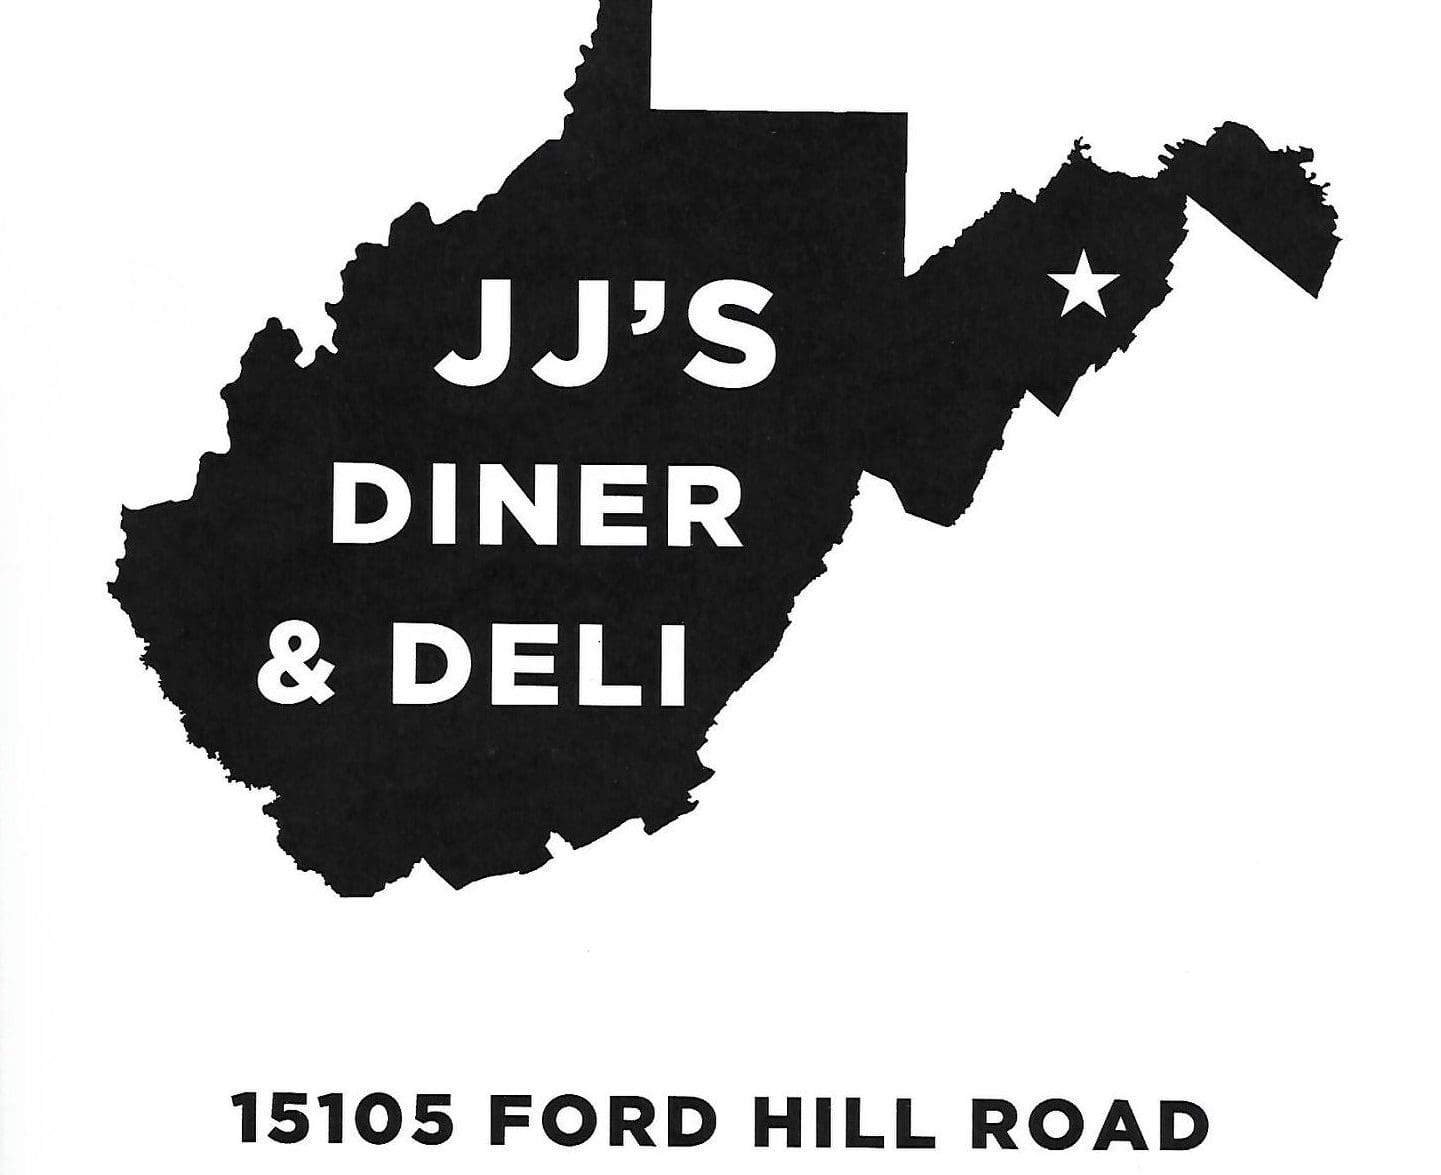 JJ’s Diner & Deli